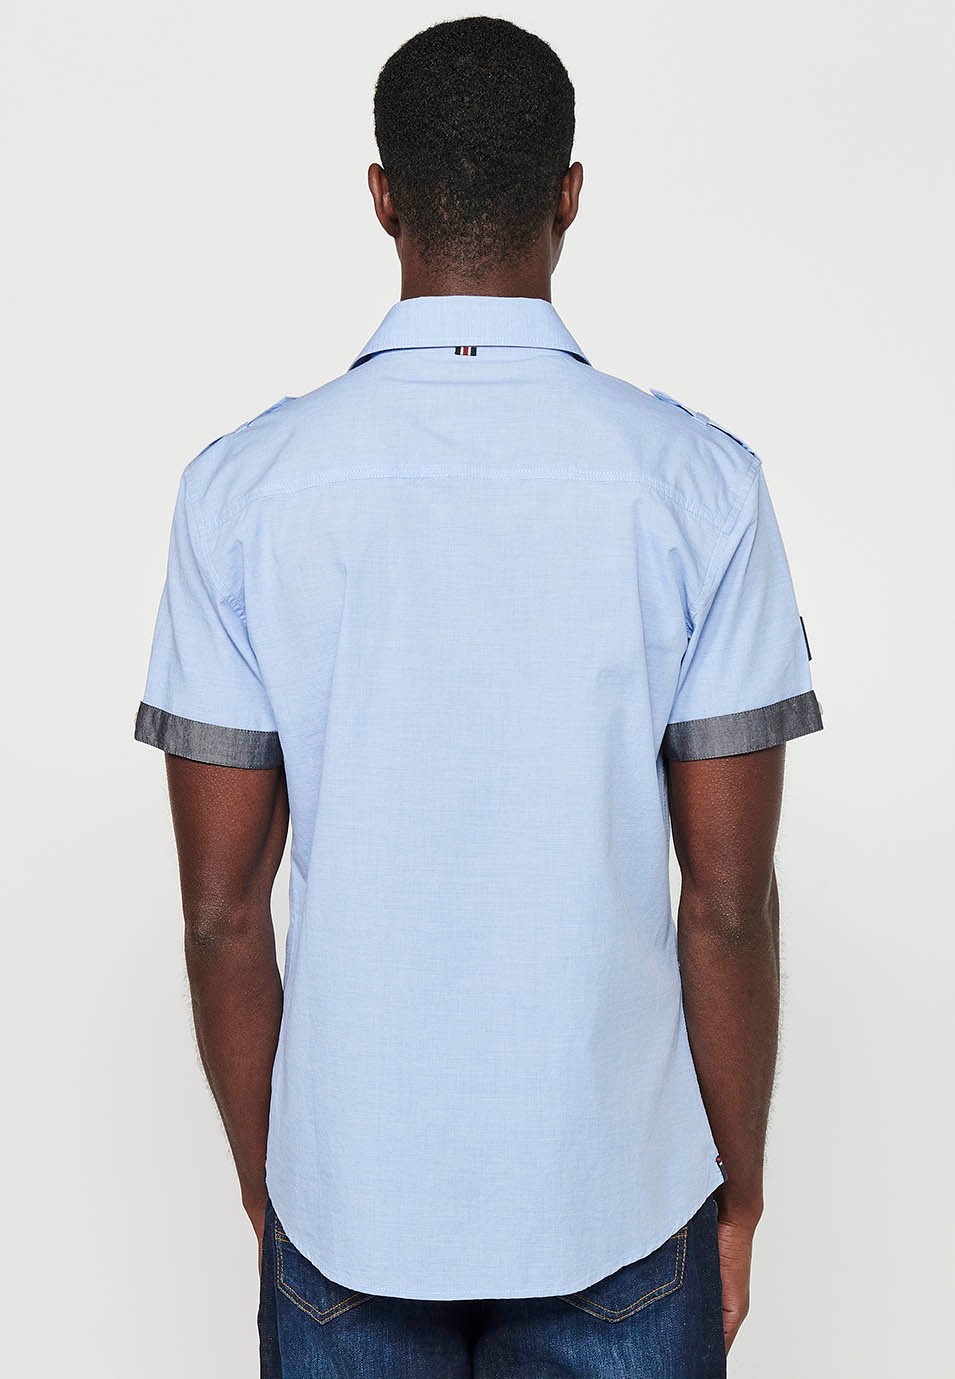 Cotton shirt, short sleeve, shoulder details, blue color for men 7